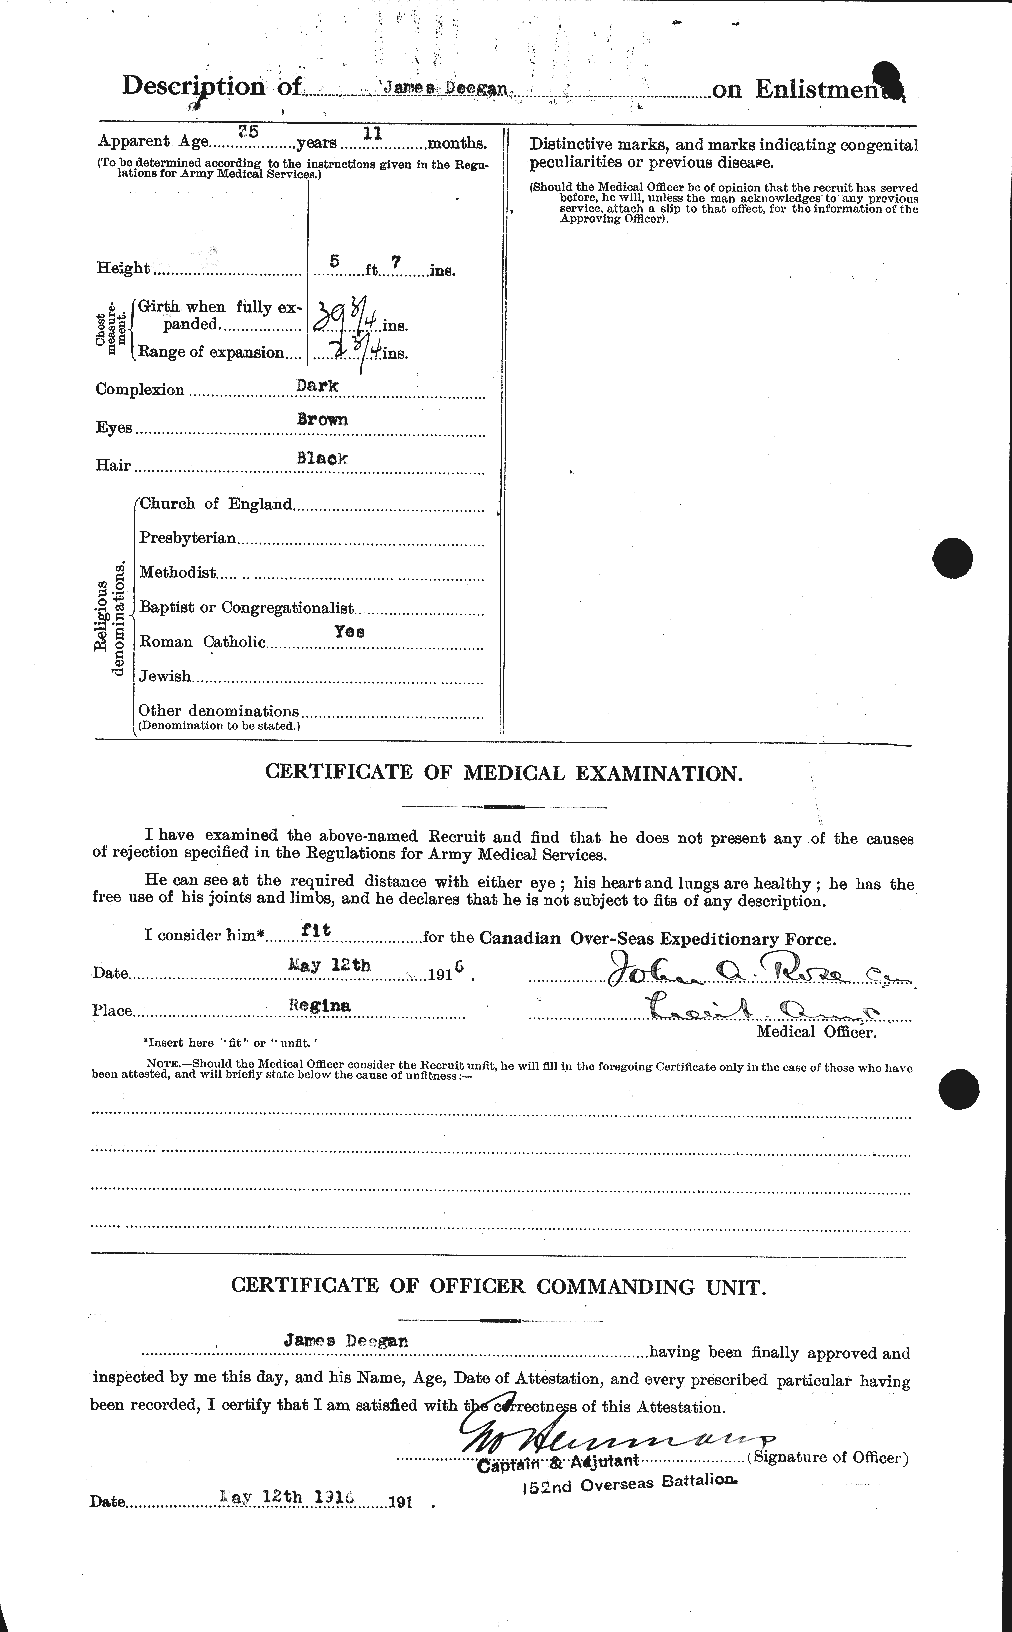 Dossiers du Personnel de la Première Guerre mondiale - CEC 285736b